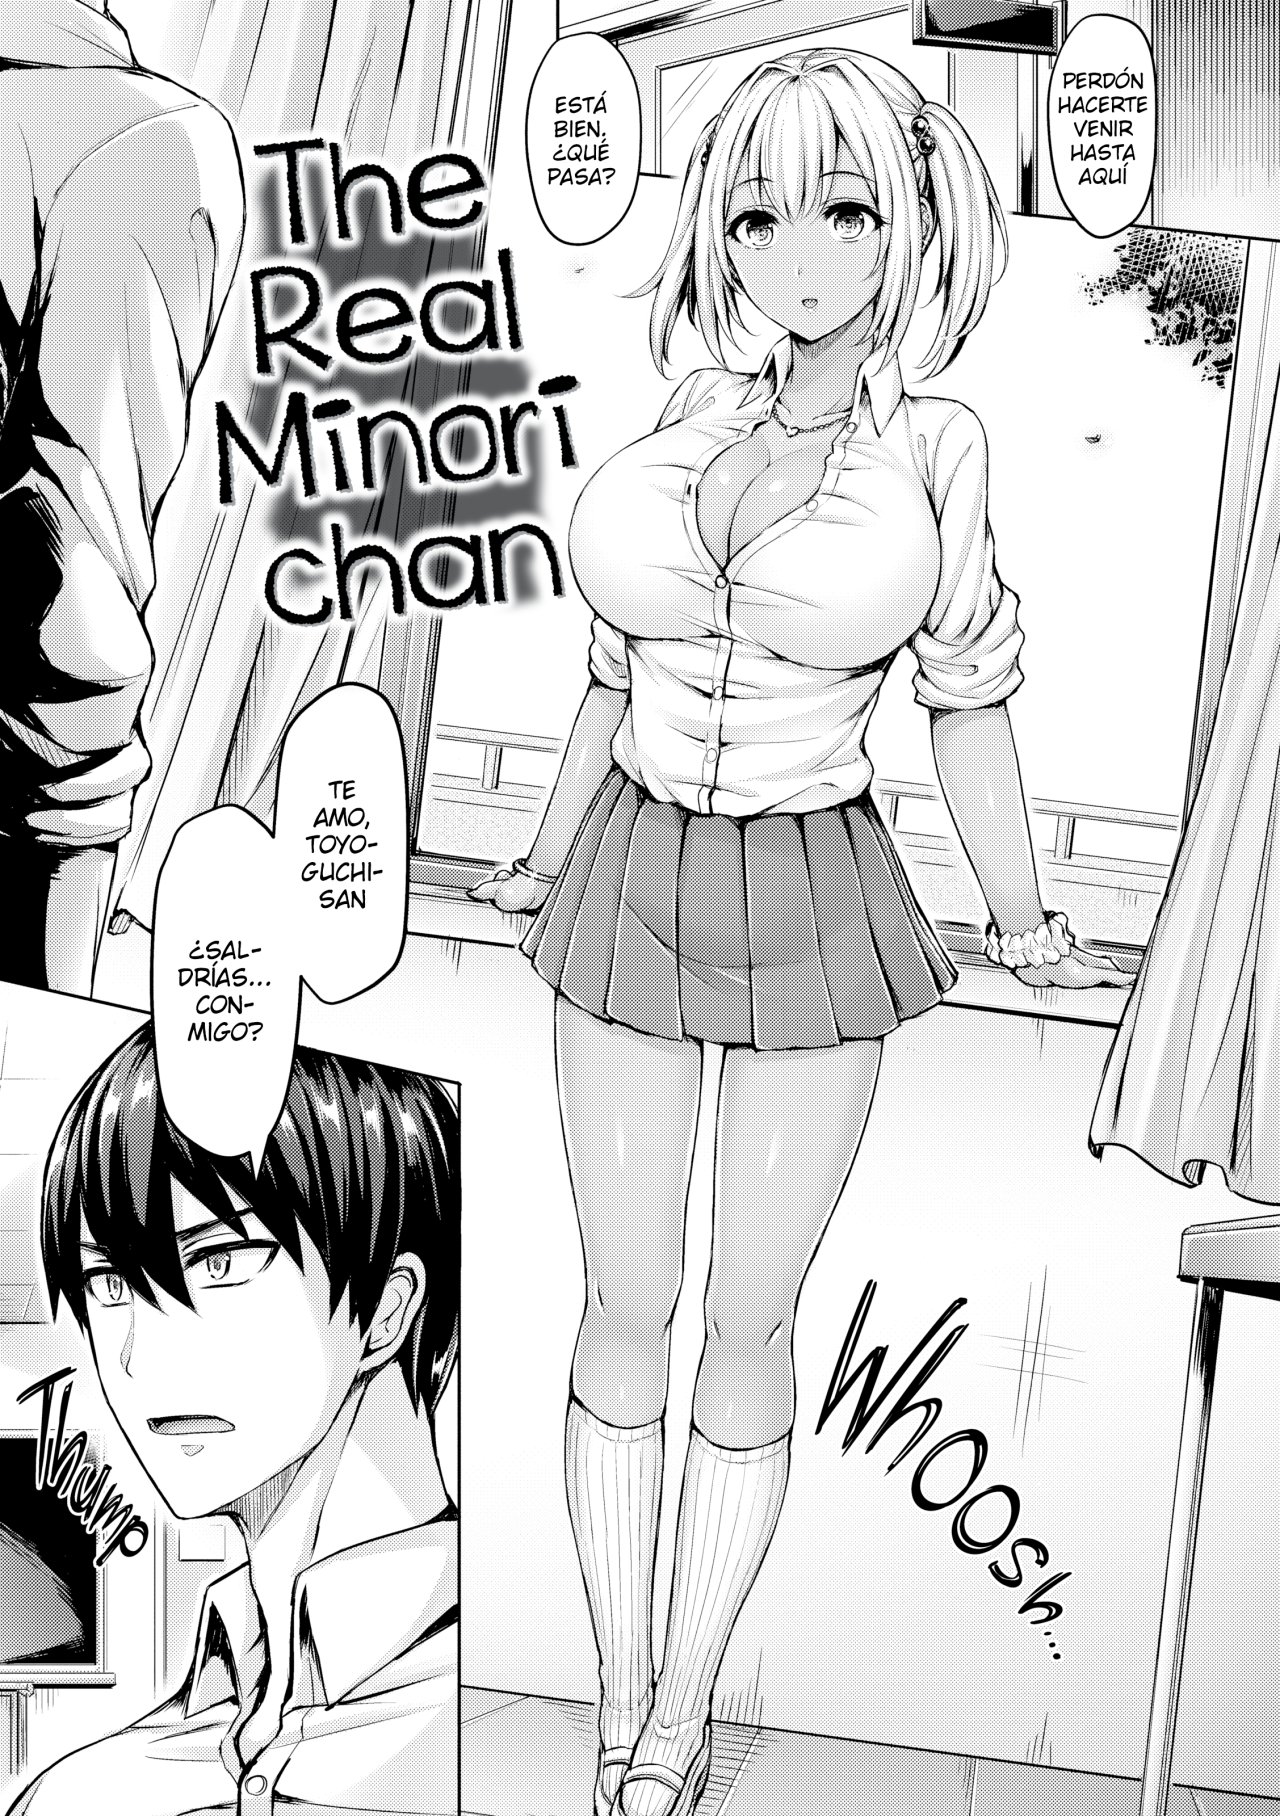 The Real Minori chan - 0